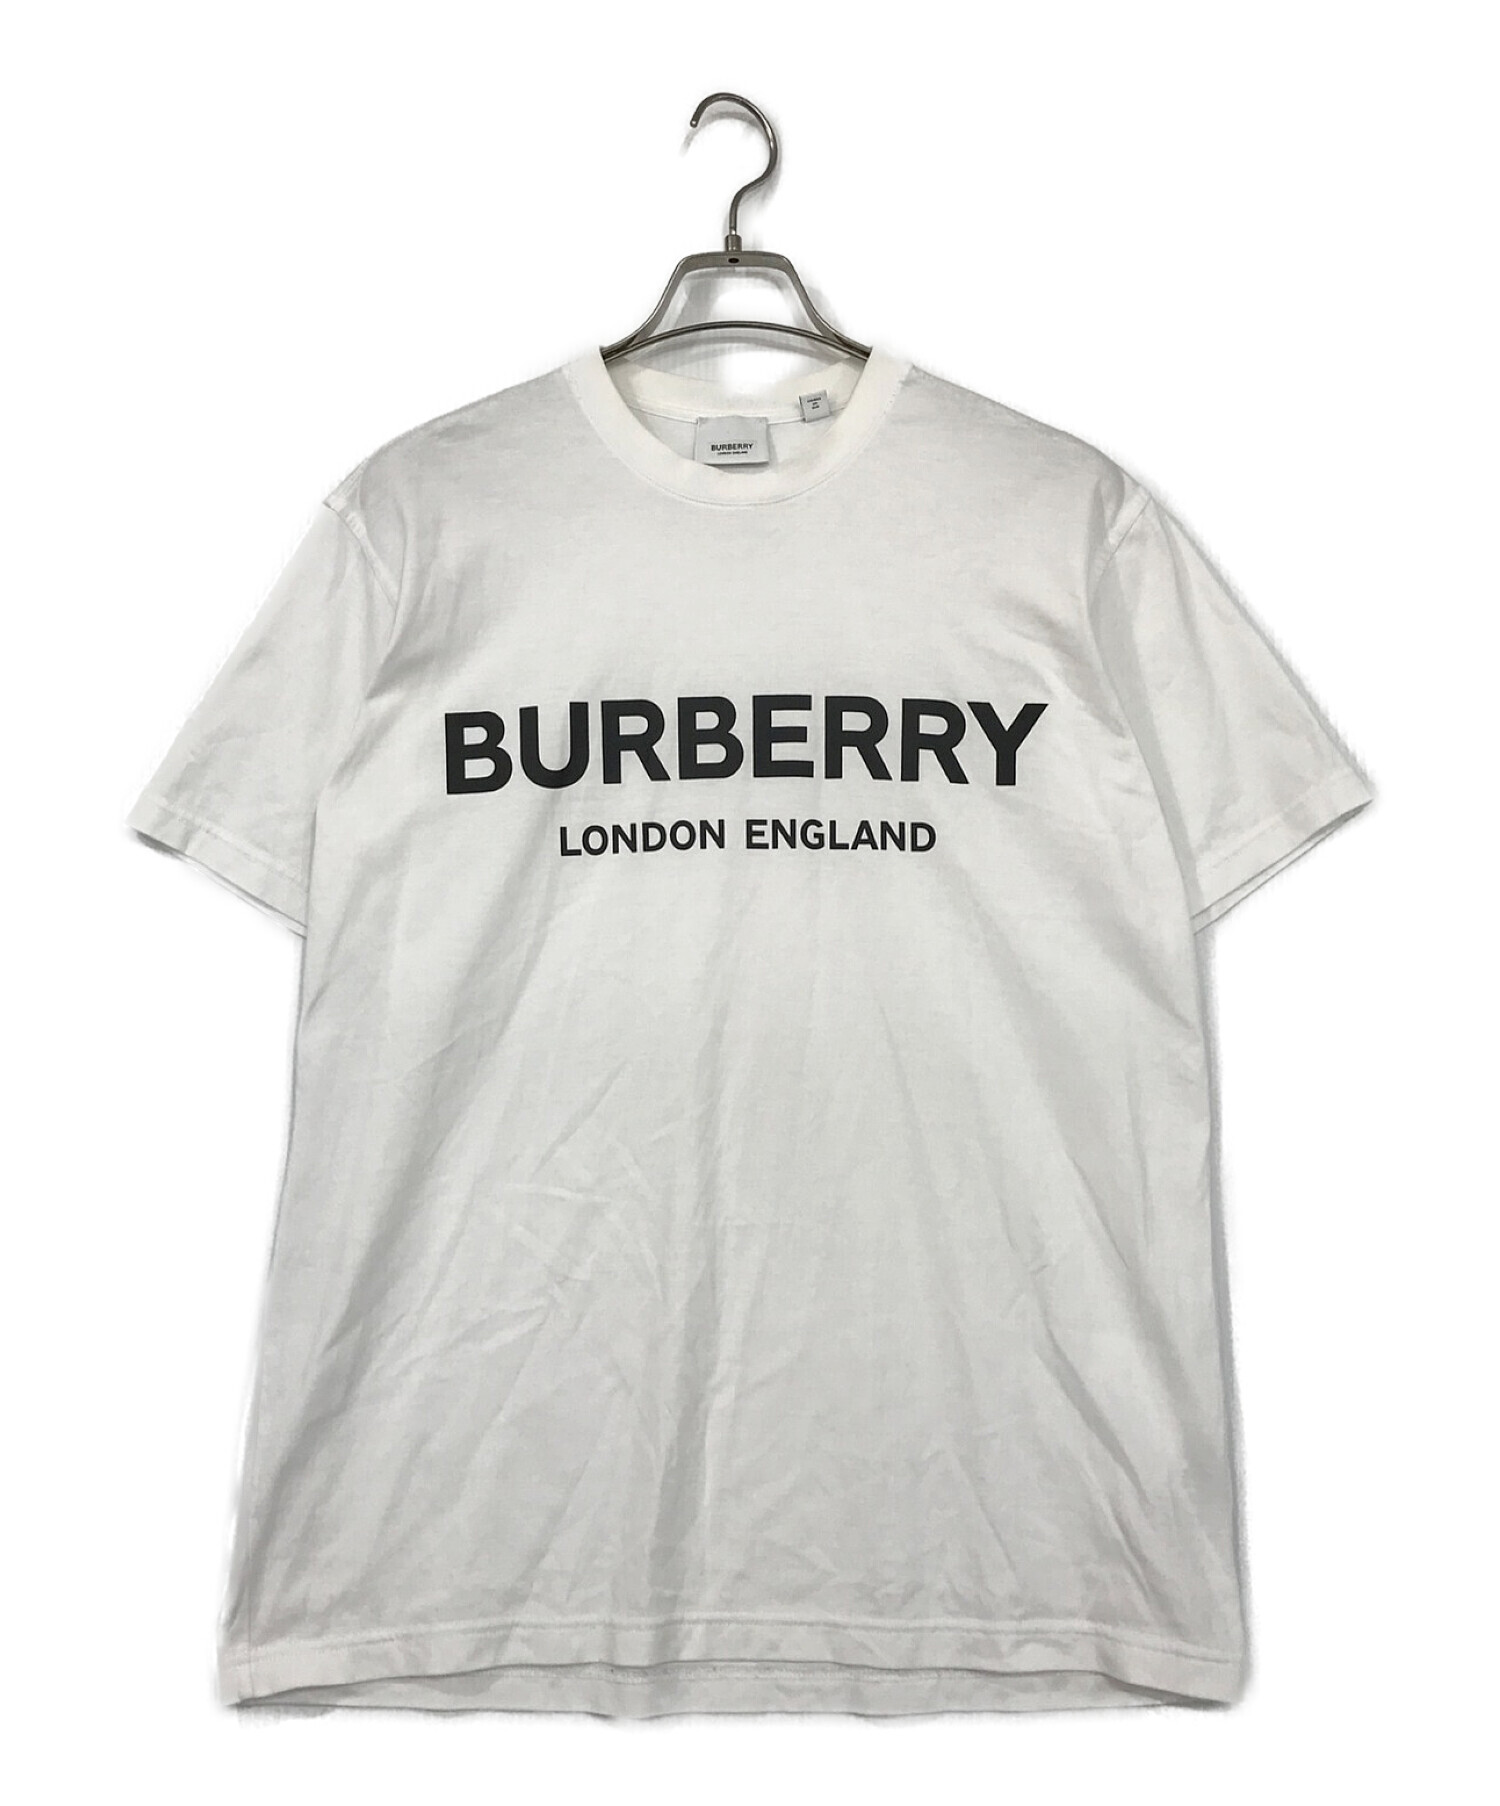 BURBERRY LONDON ENGLAND (バーバリー ロンドン イングランド) プリントTシャツ ホワイト サイズ:SIZE XS